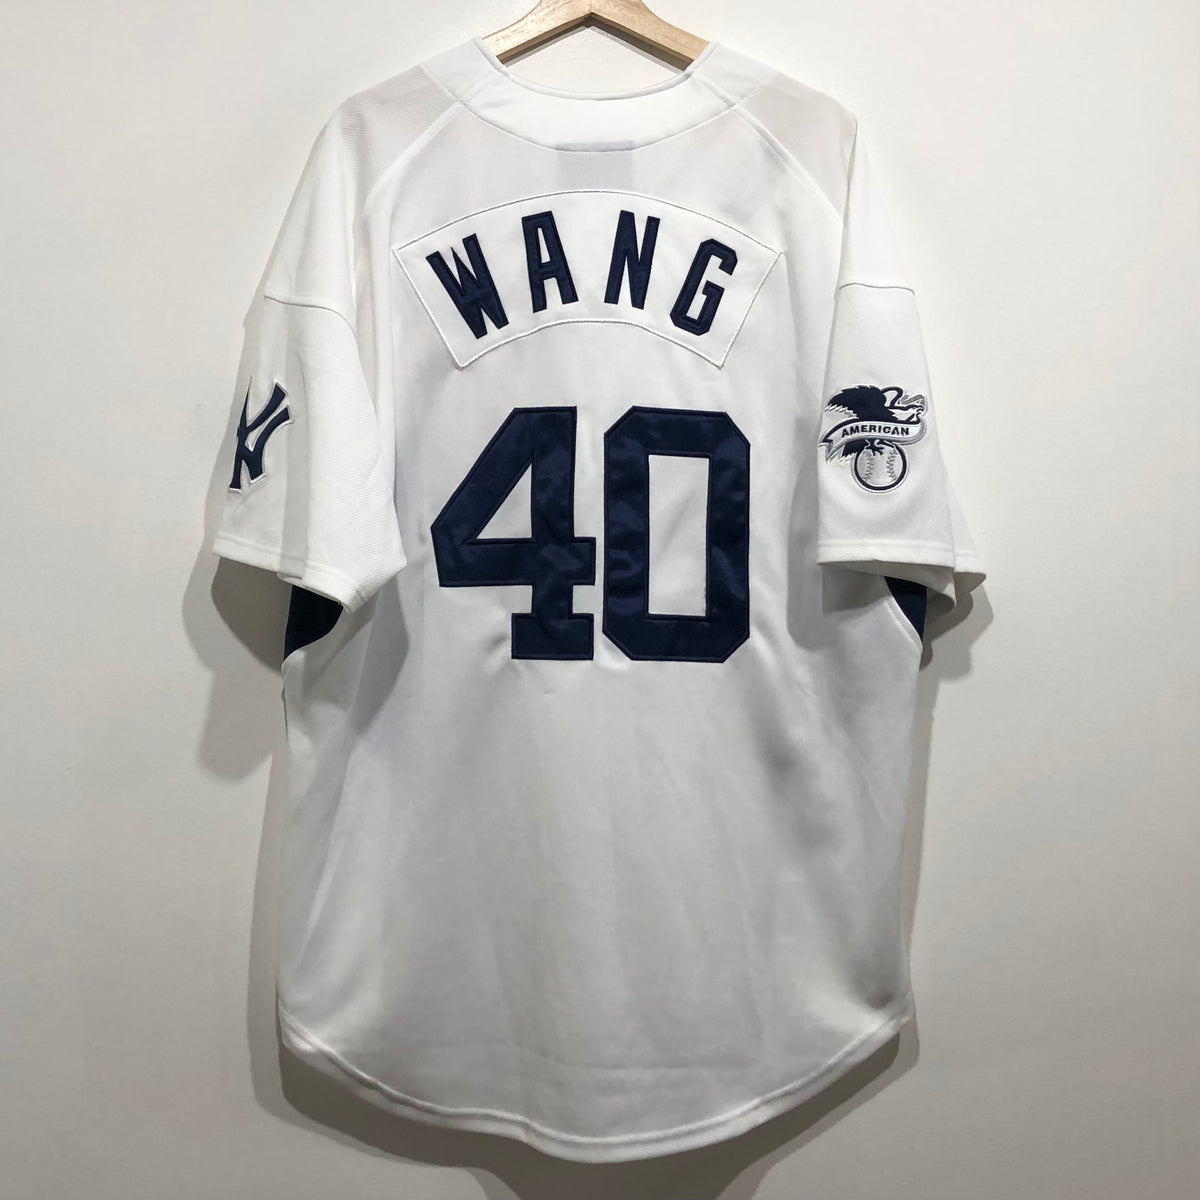 Chien-ming Wang New York Yankees Collectible Baseball Card 